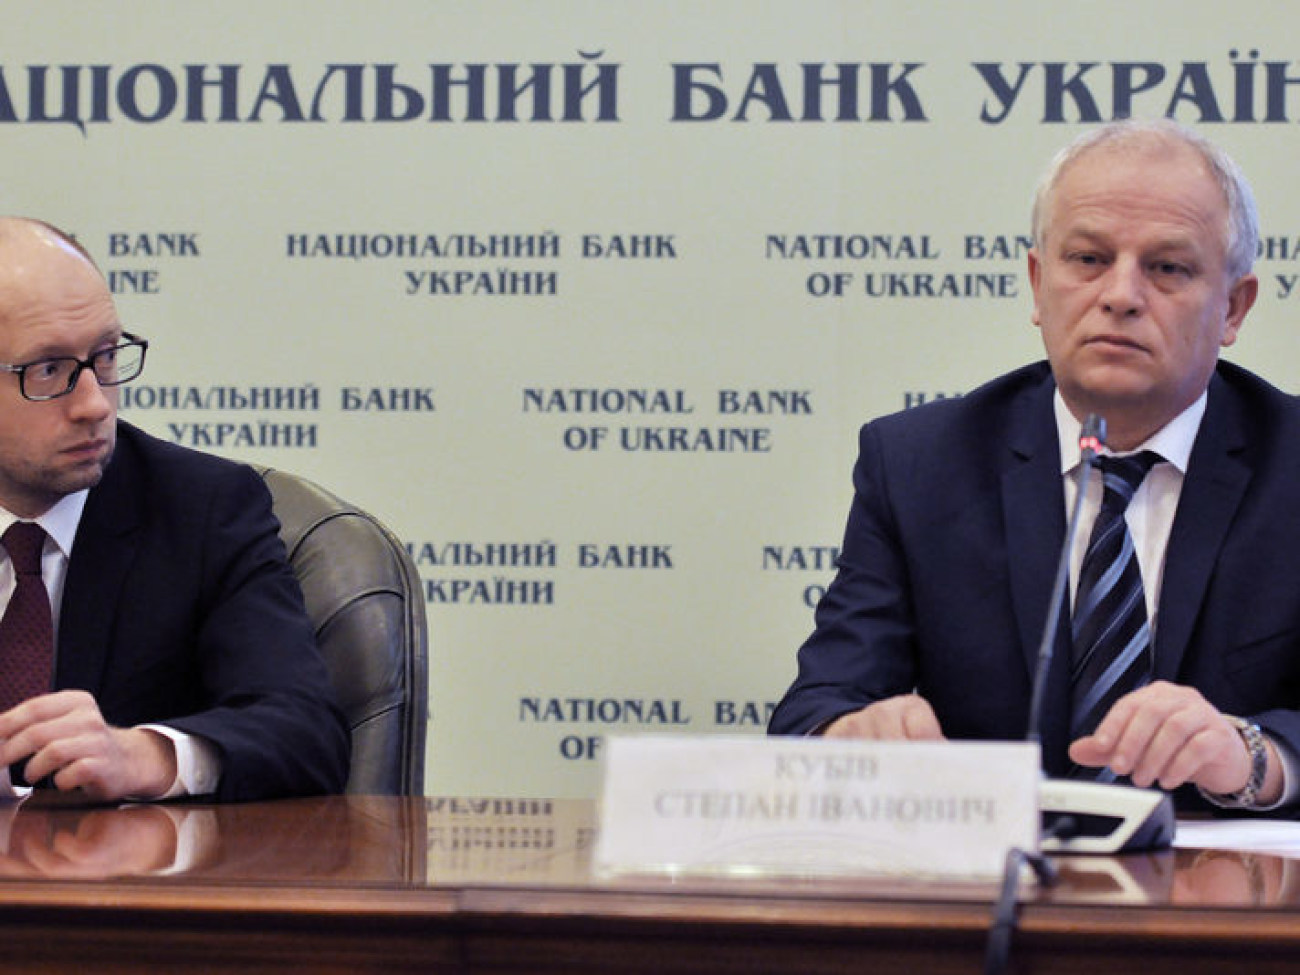 Новый глава Нацбанка дал первую пресс-конференцию, 28 февраля 2014г.